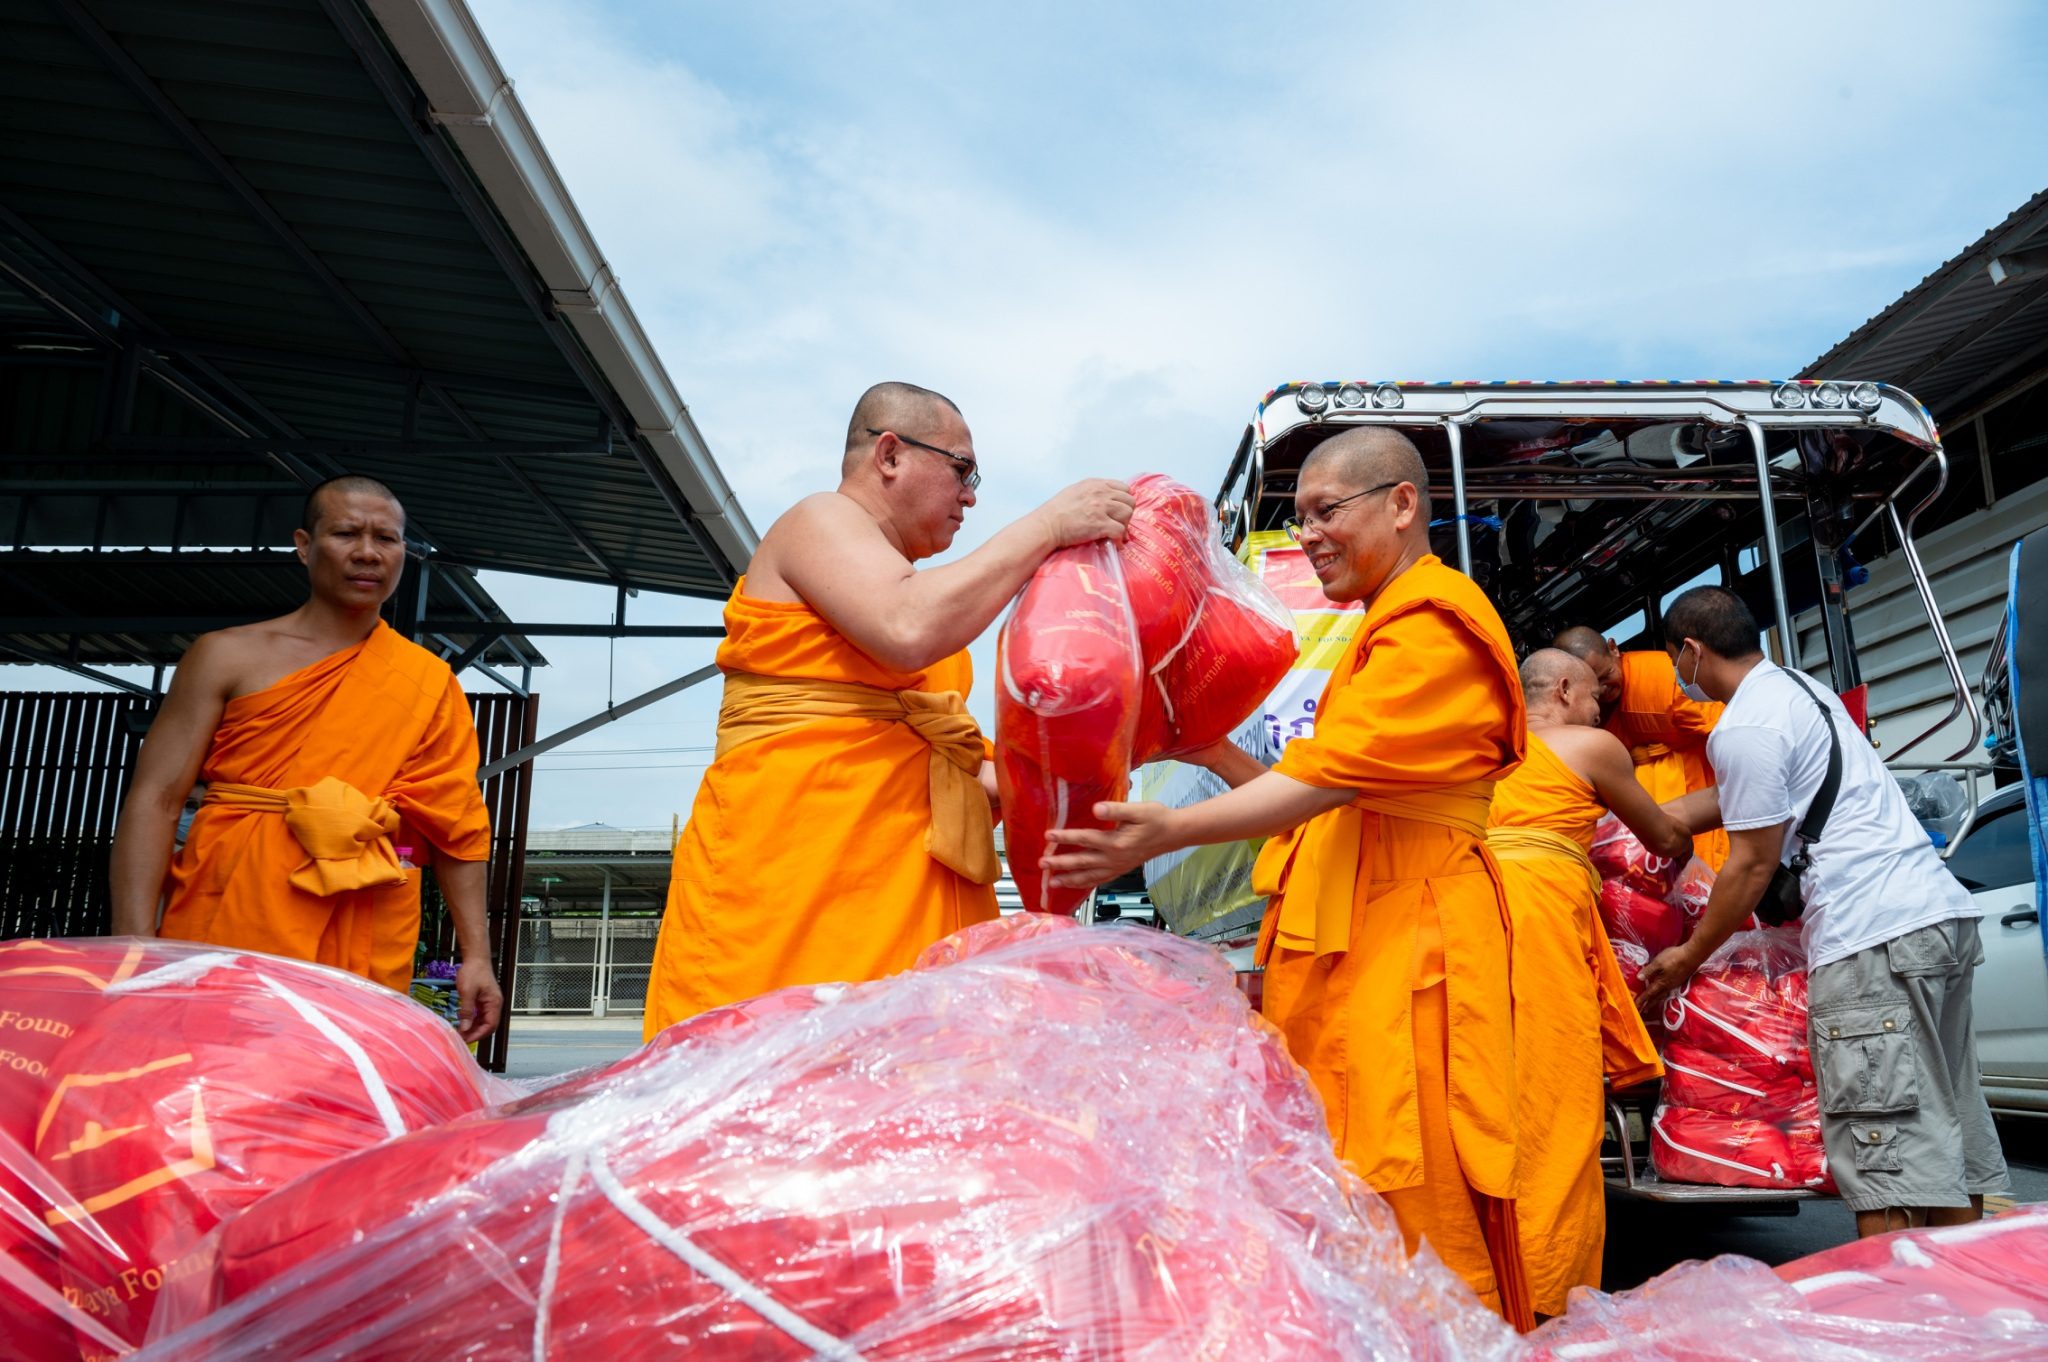 วัดพระธรรมกาย มูลนิธิธรรมกาย ส่งมอบถุงยังชีพ 5,000 ชุด ช่วยผู้ประสบภัยน้ำท่วม 7 จังหวัด